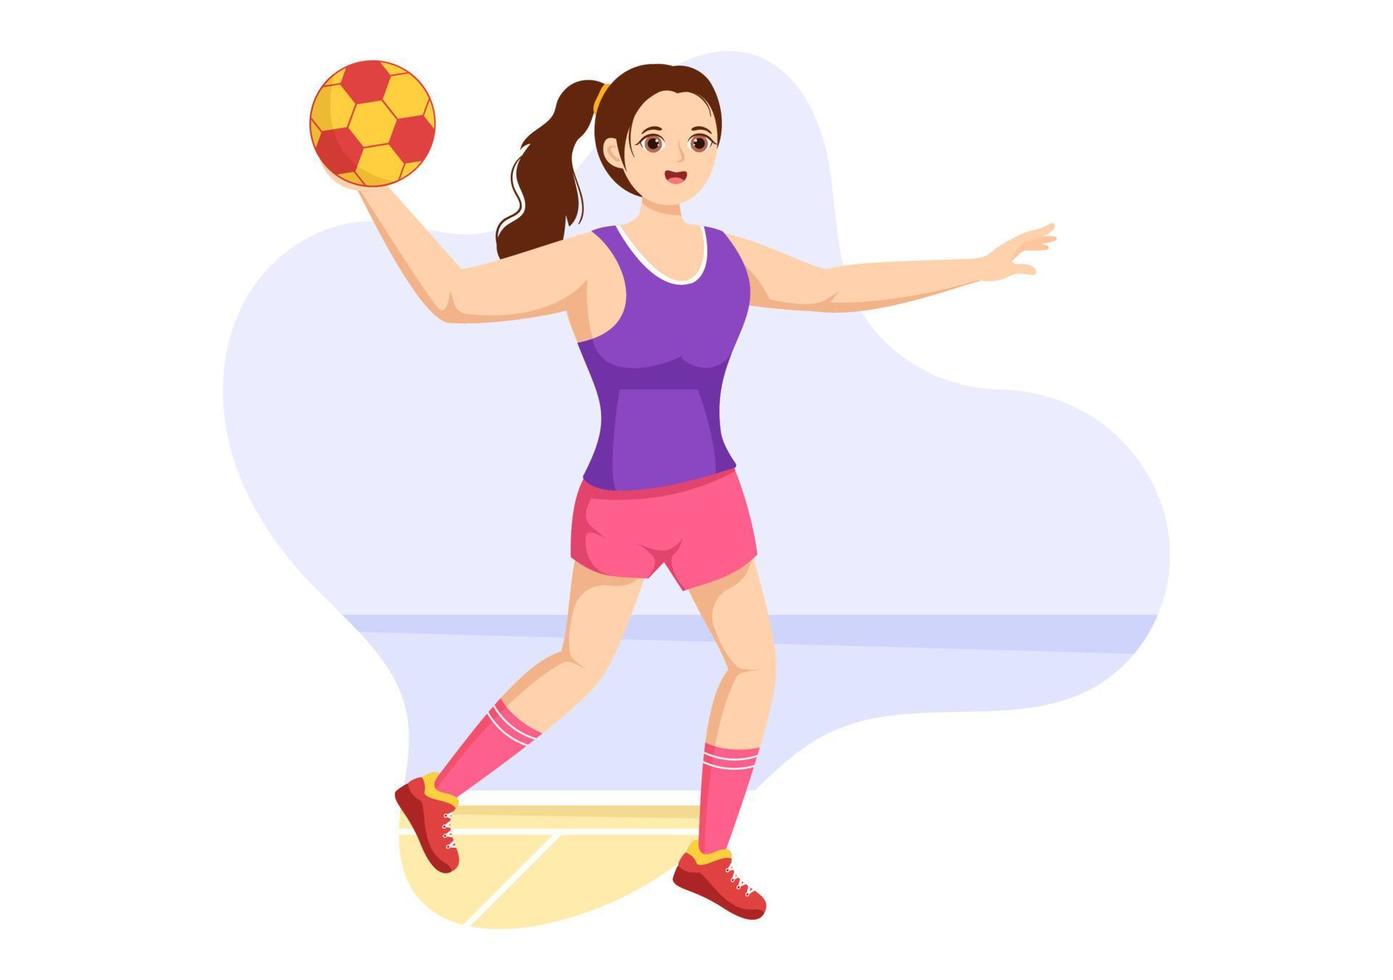 illustration de handball d'un joueur touchant le ballon avec sa main et marquant un but dans un modèle de dessin à la main de dessin animé plat de compétition sportive vecteur